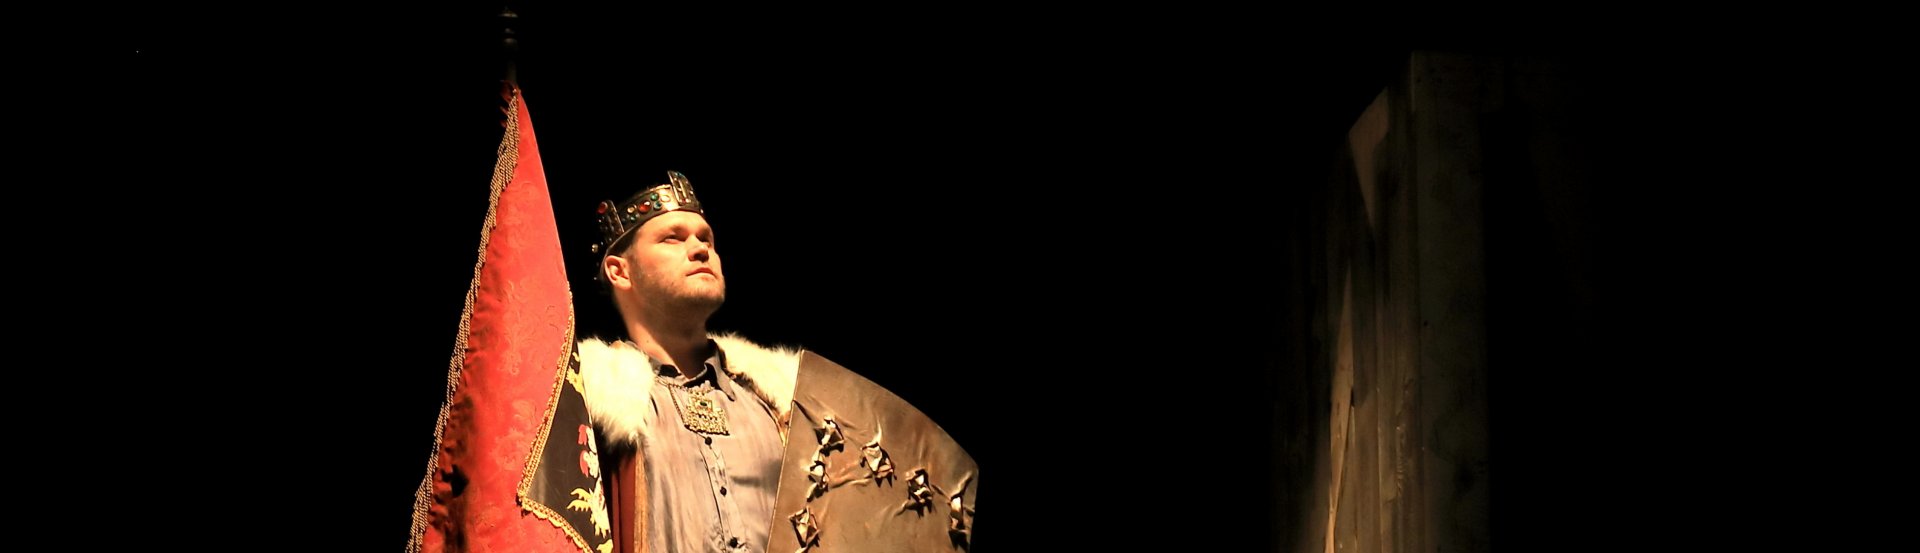 László király visszatér! című előadás kiemelt képe a Pécsi Nemzeti Színházból